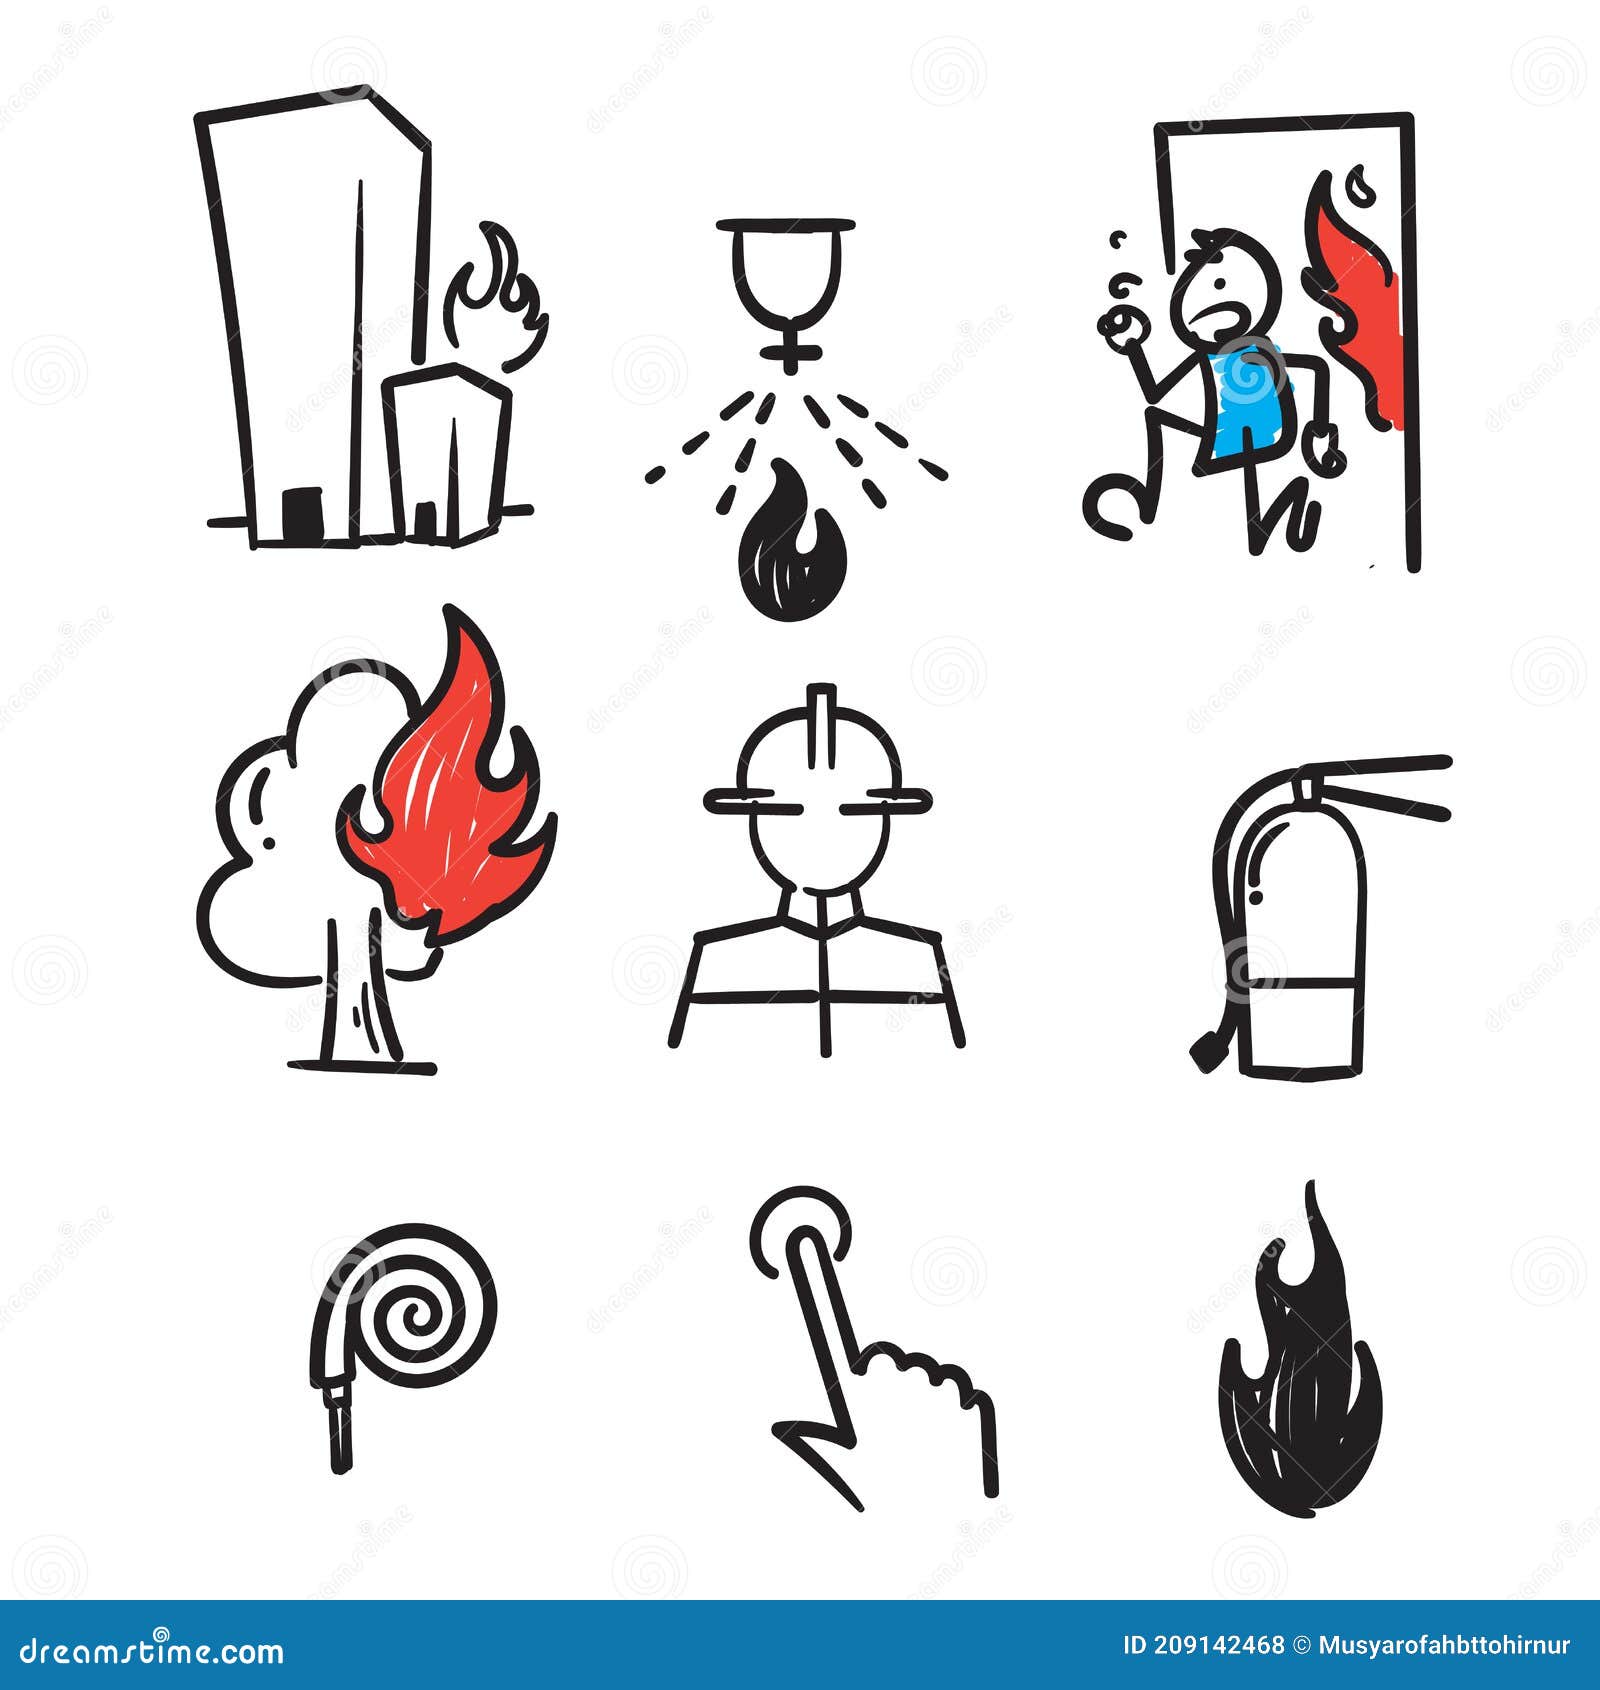 Ilustração de ícone de fogo desenhado à mão